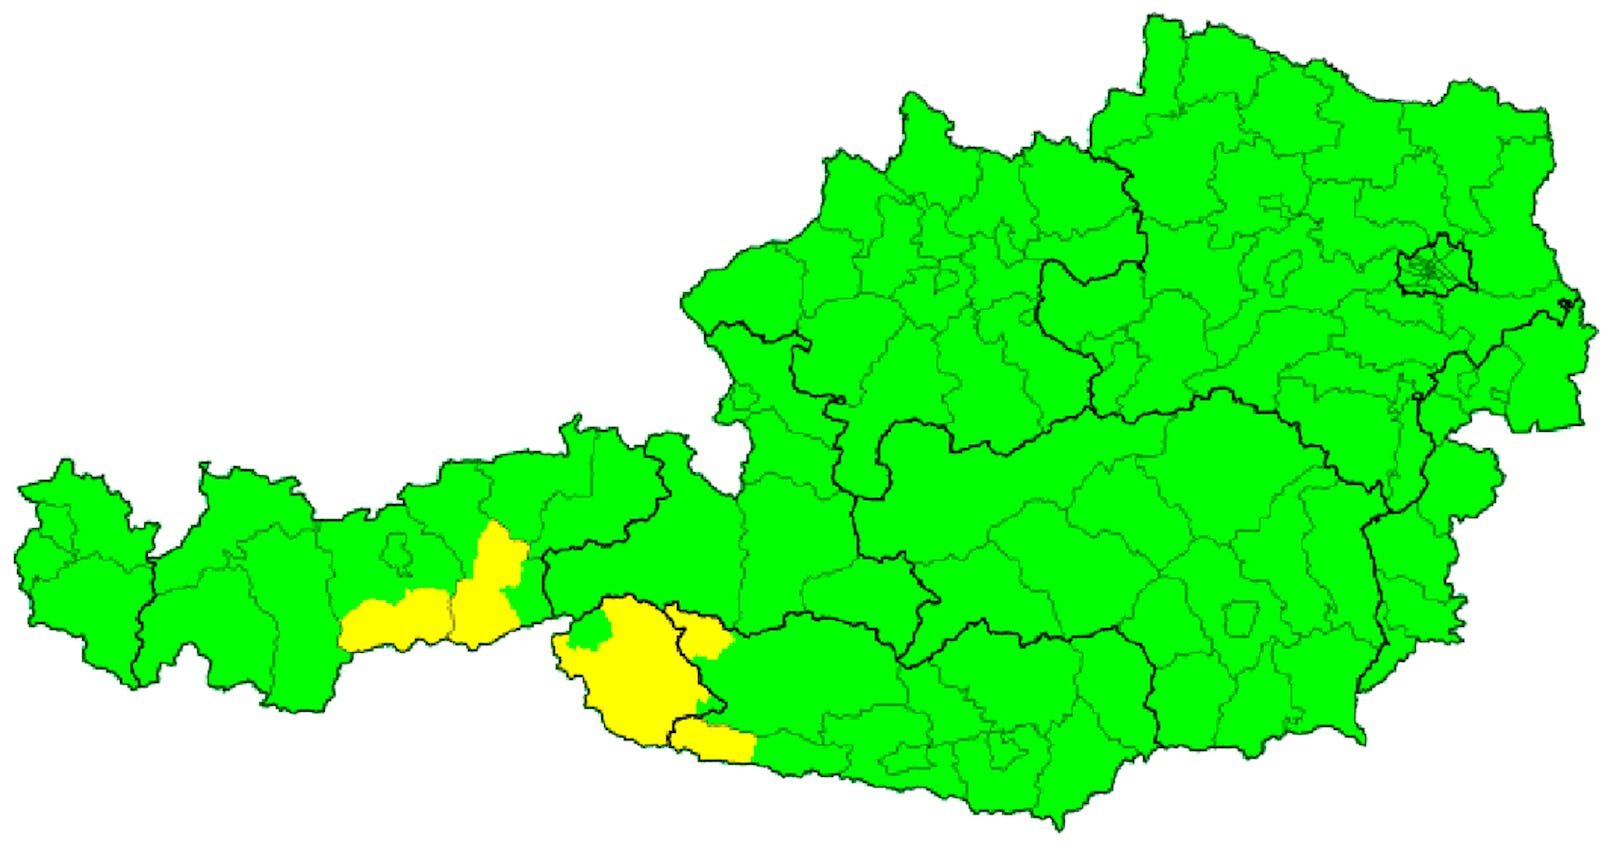 Am 30. Juni 2020 war die Unwetterkarte für (fast) ganz Österreich auf Grün. Das wird sich bald ändern